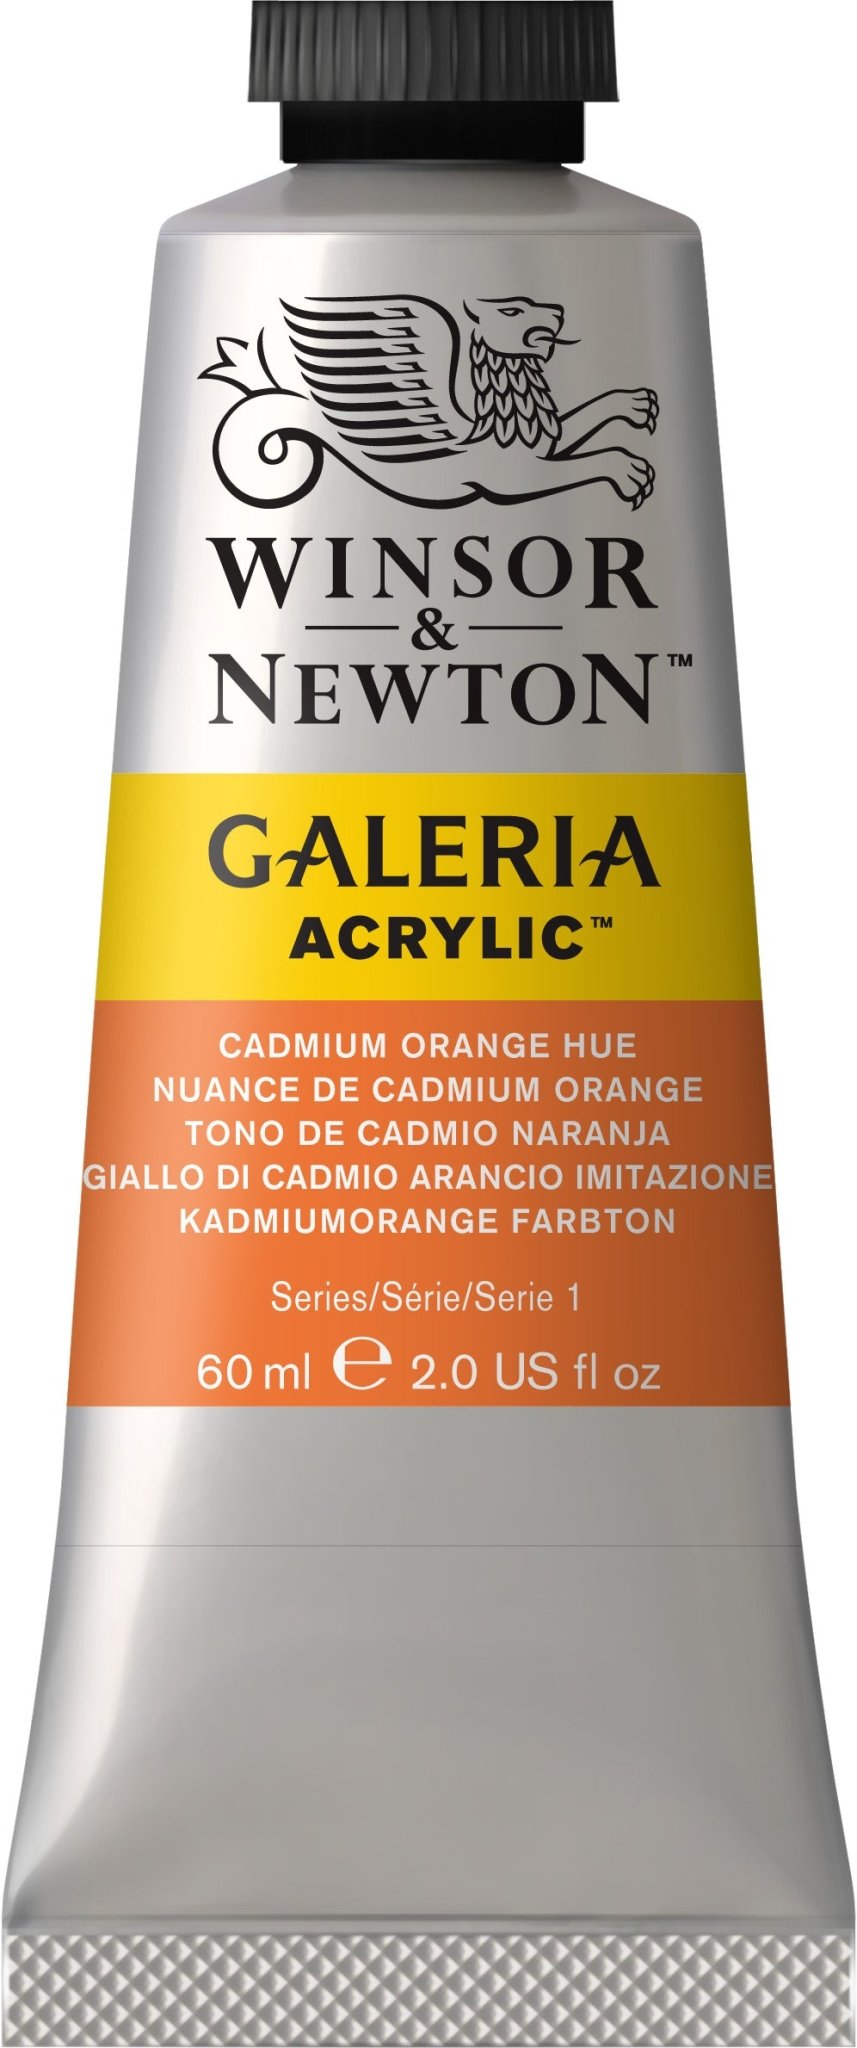 W & N Galeria Acrylic 60ml Cadmium Orange Hue - theartshop.com.au